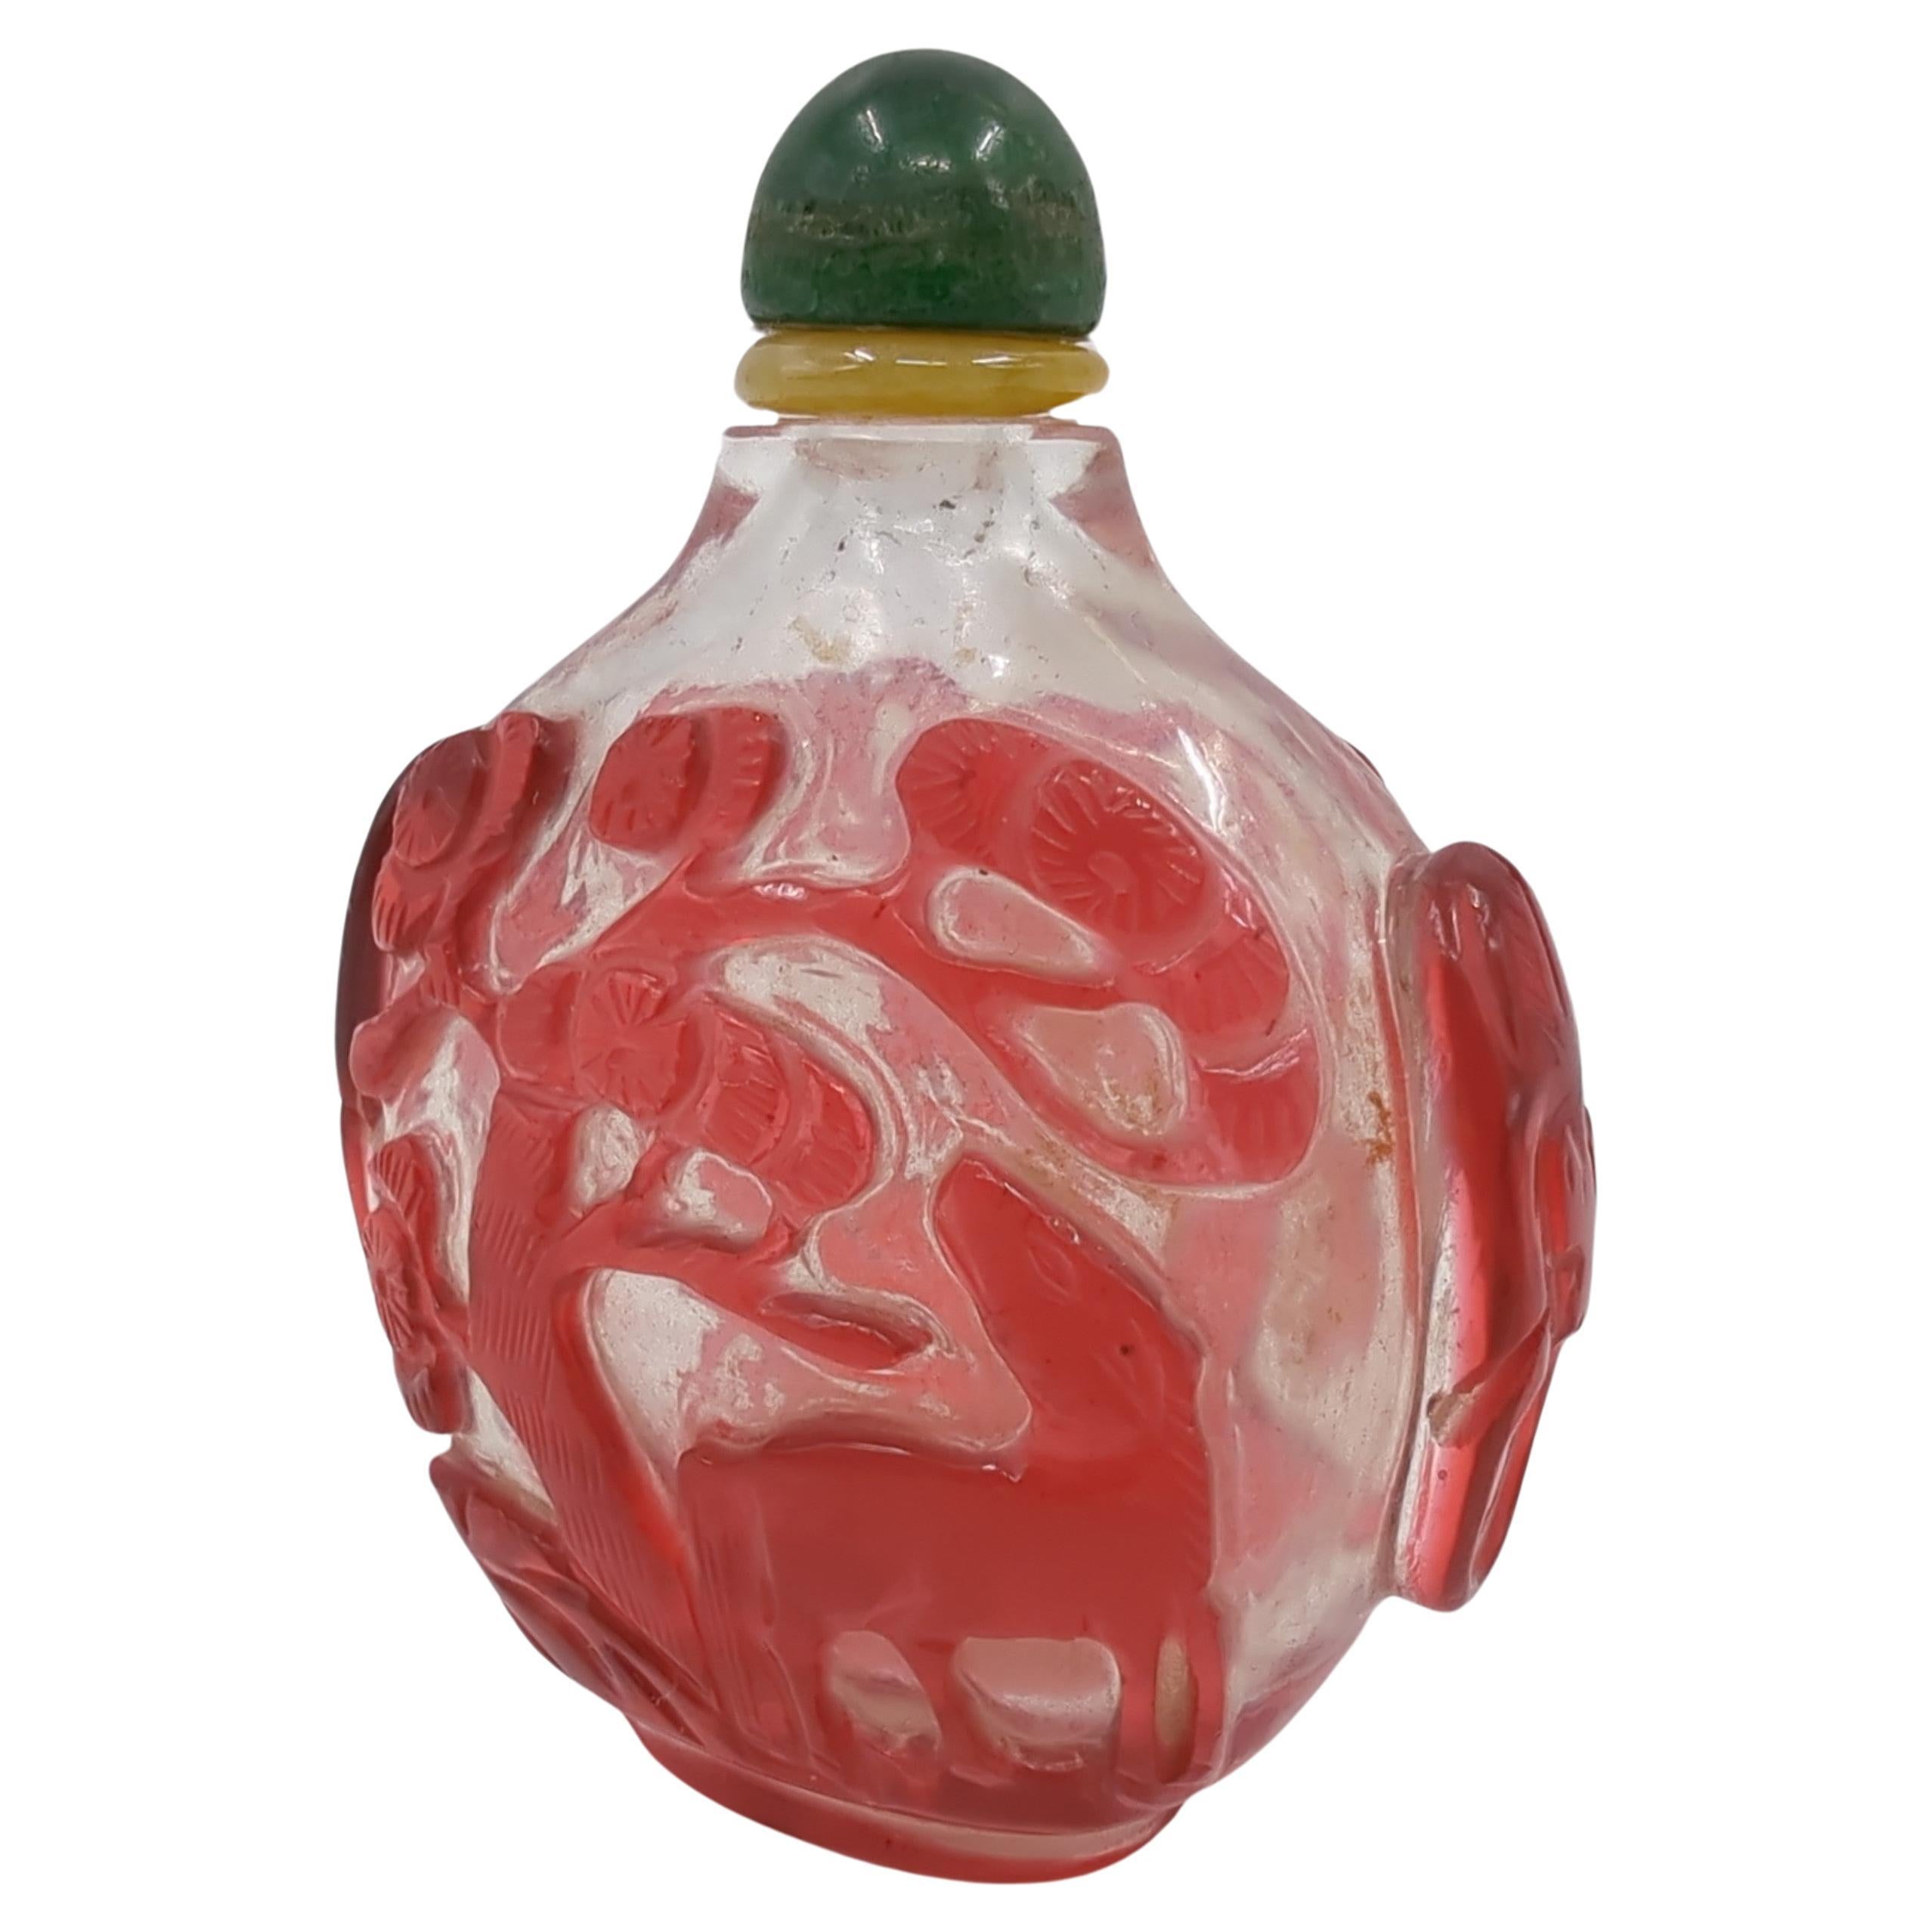 Ancienne bouteille à priser de la fin de la dynastie Qing en verre rouge rubis à fond clair, sculptée à la main avec un cheval dans une scène de prairie arborée de chaque côté, un éléphant sculpté.  tête et anneaux aux épaules, avec un bouchon fixe